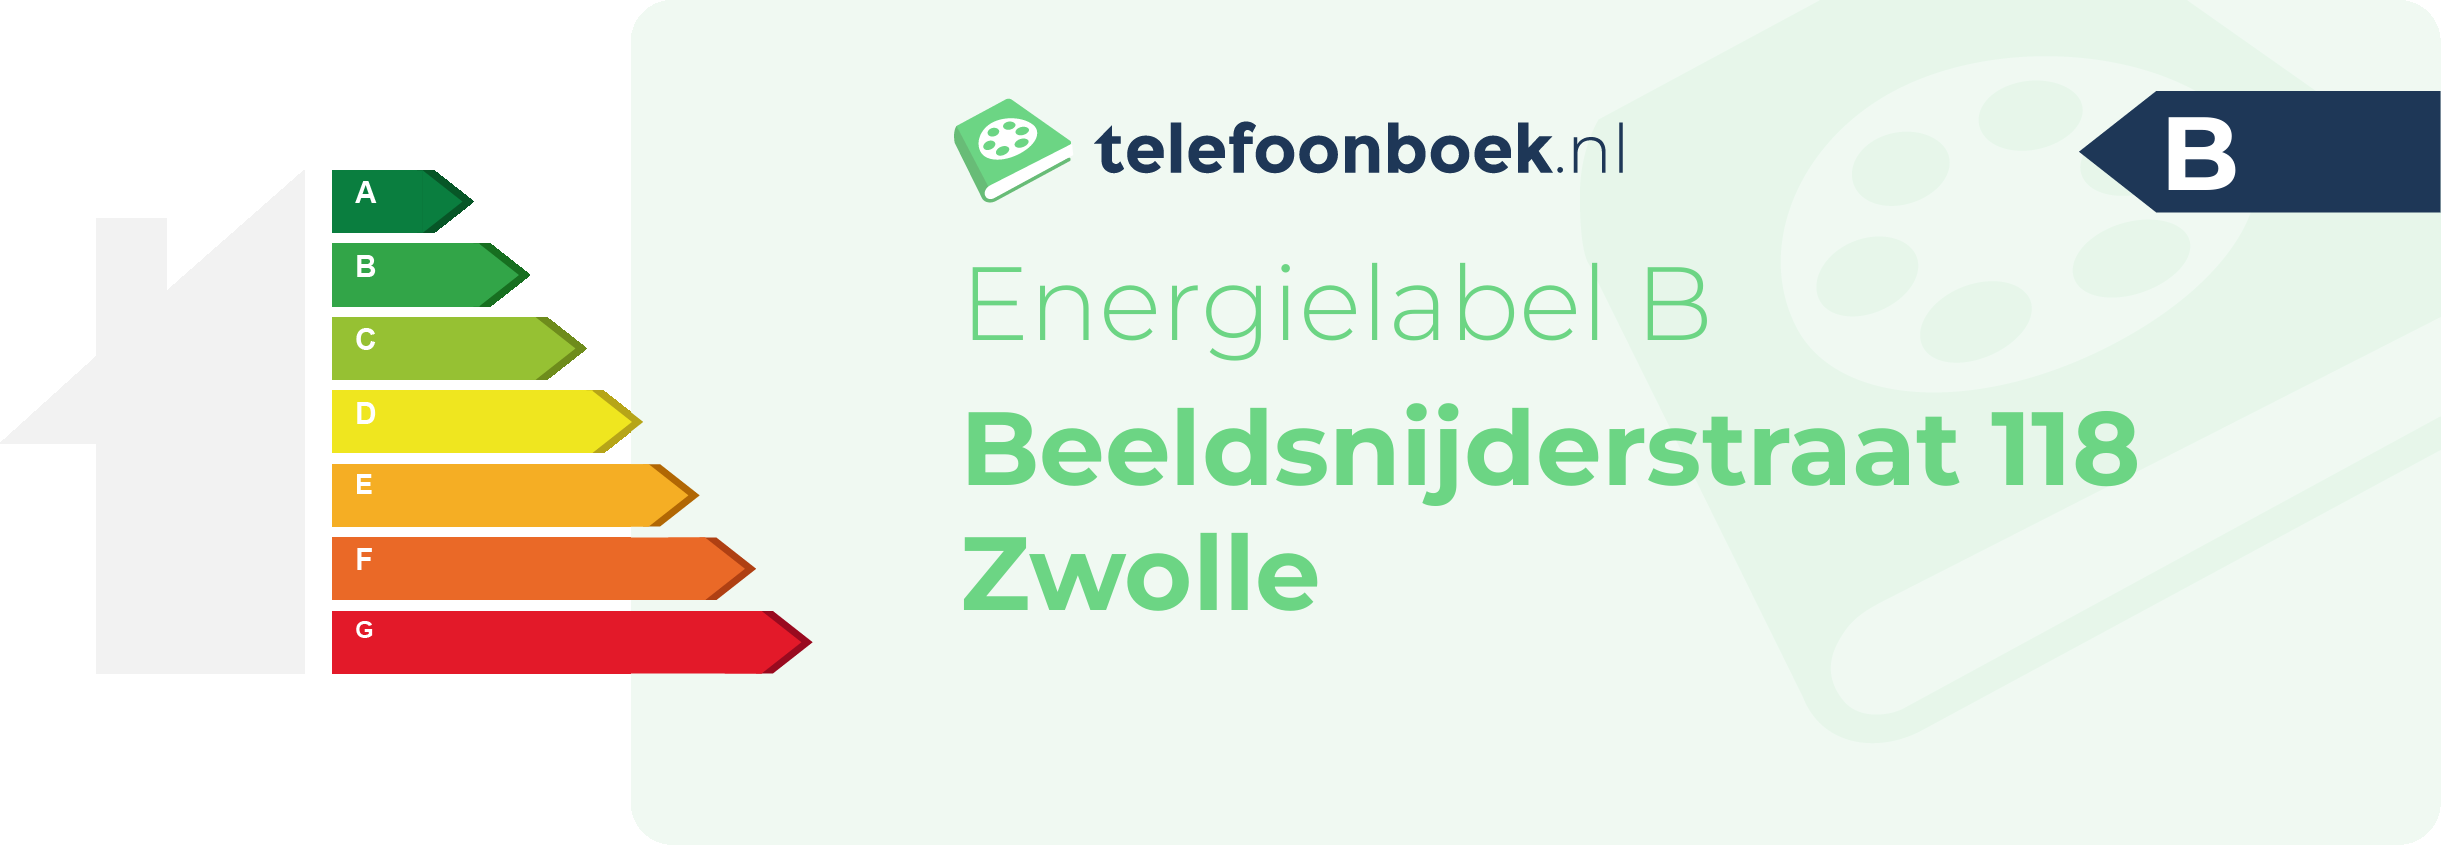 Energielabel Beeldsnijderstraat 118 Zwolle